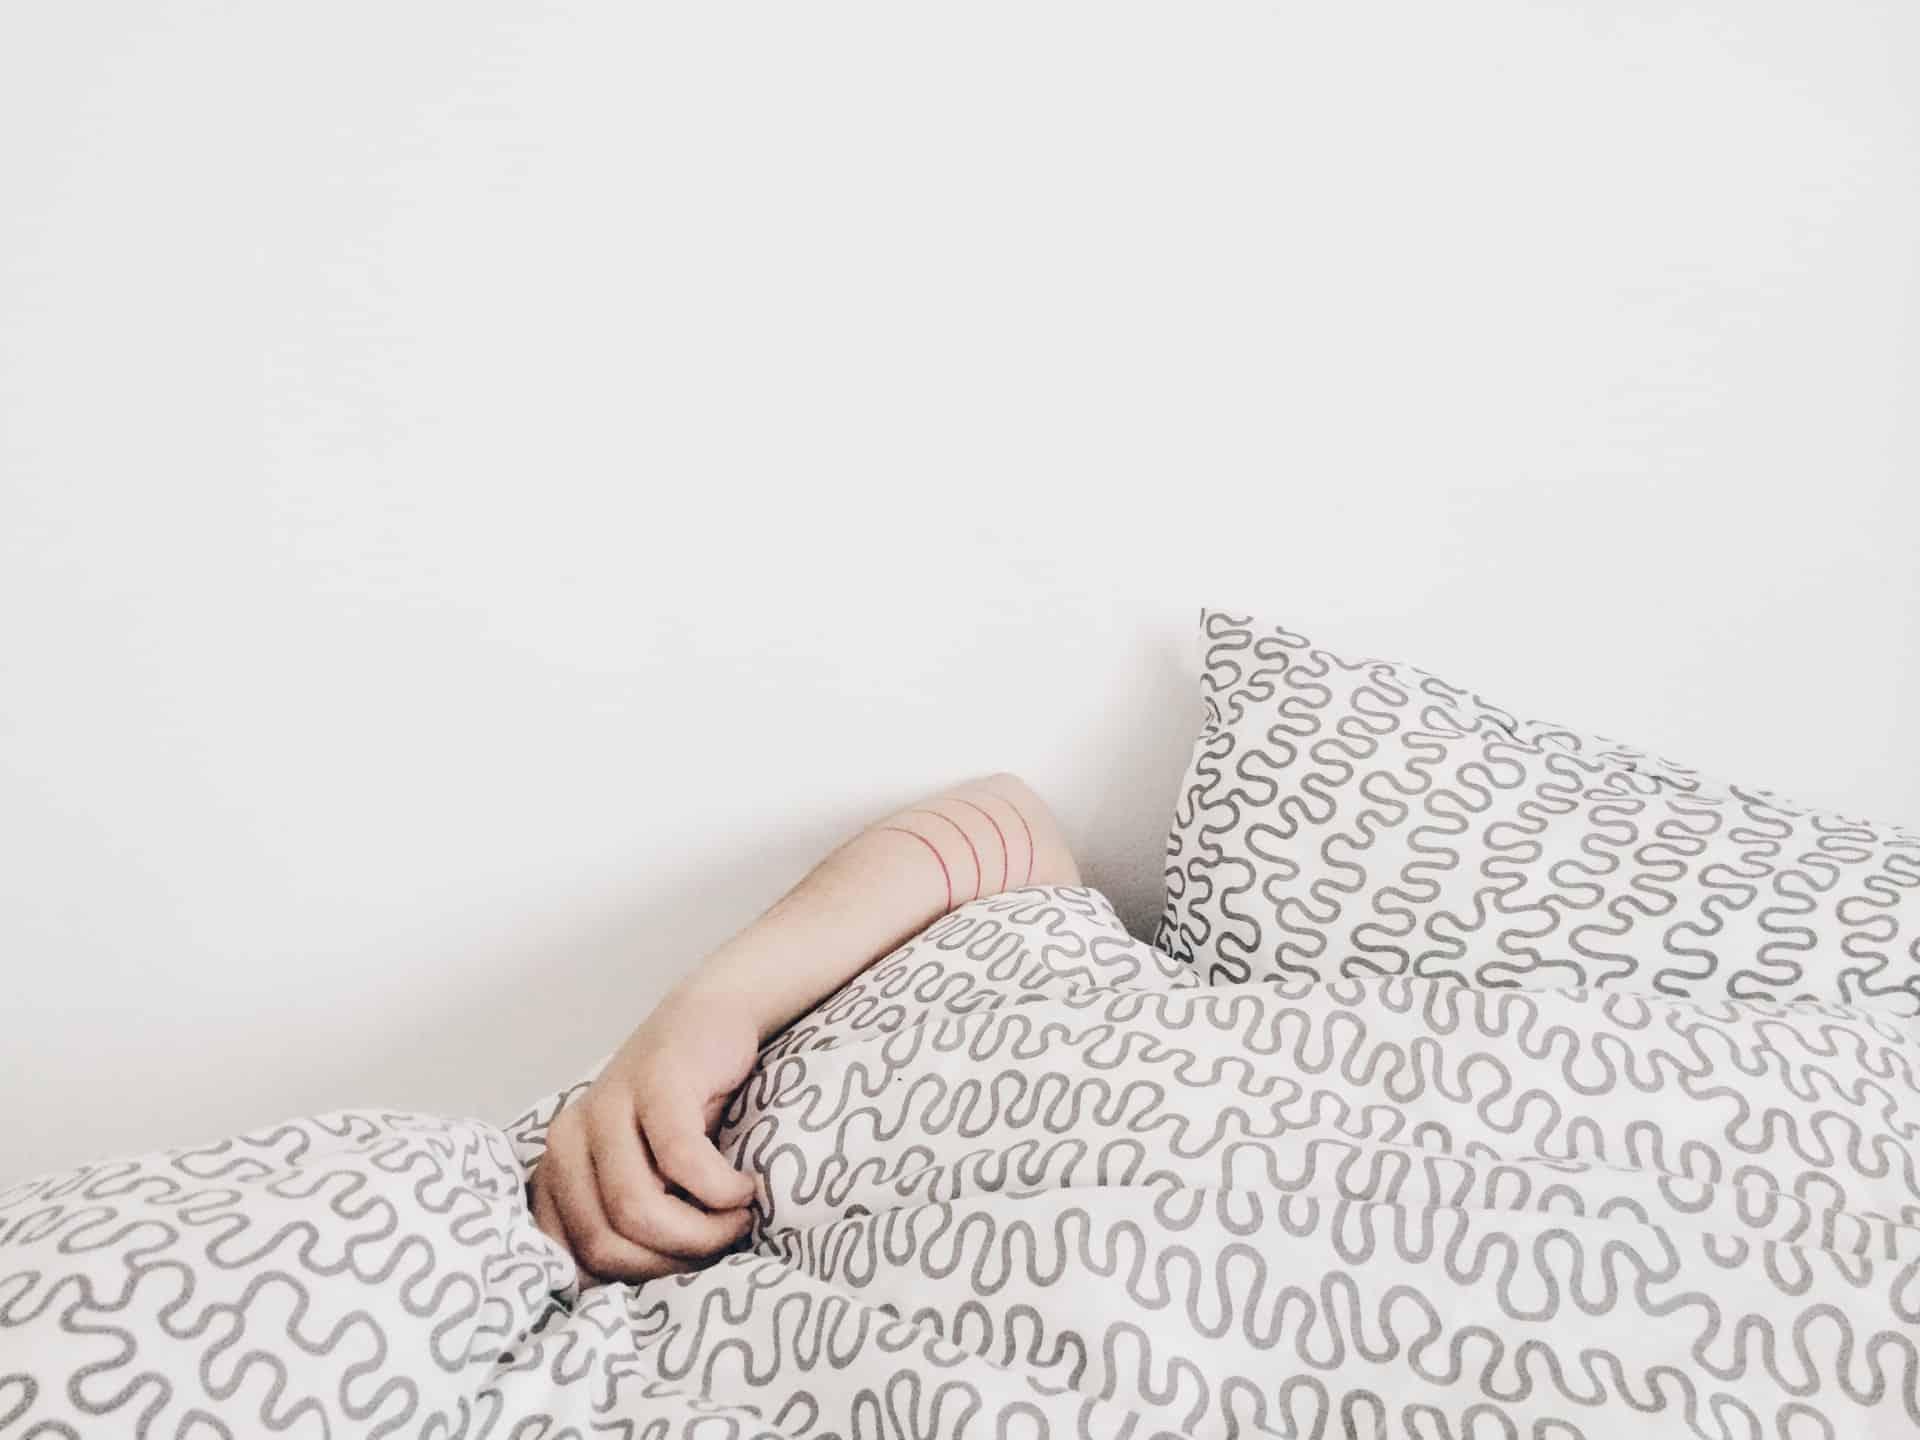 kortisoli vaikuttaa unenlaatuun ja stressiin